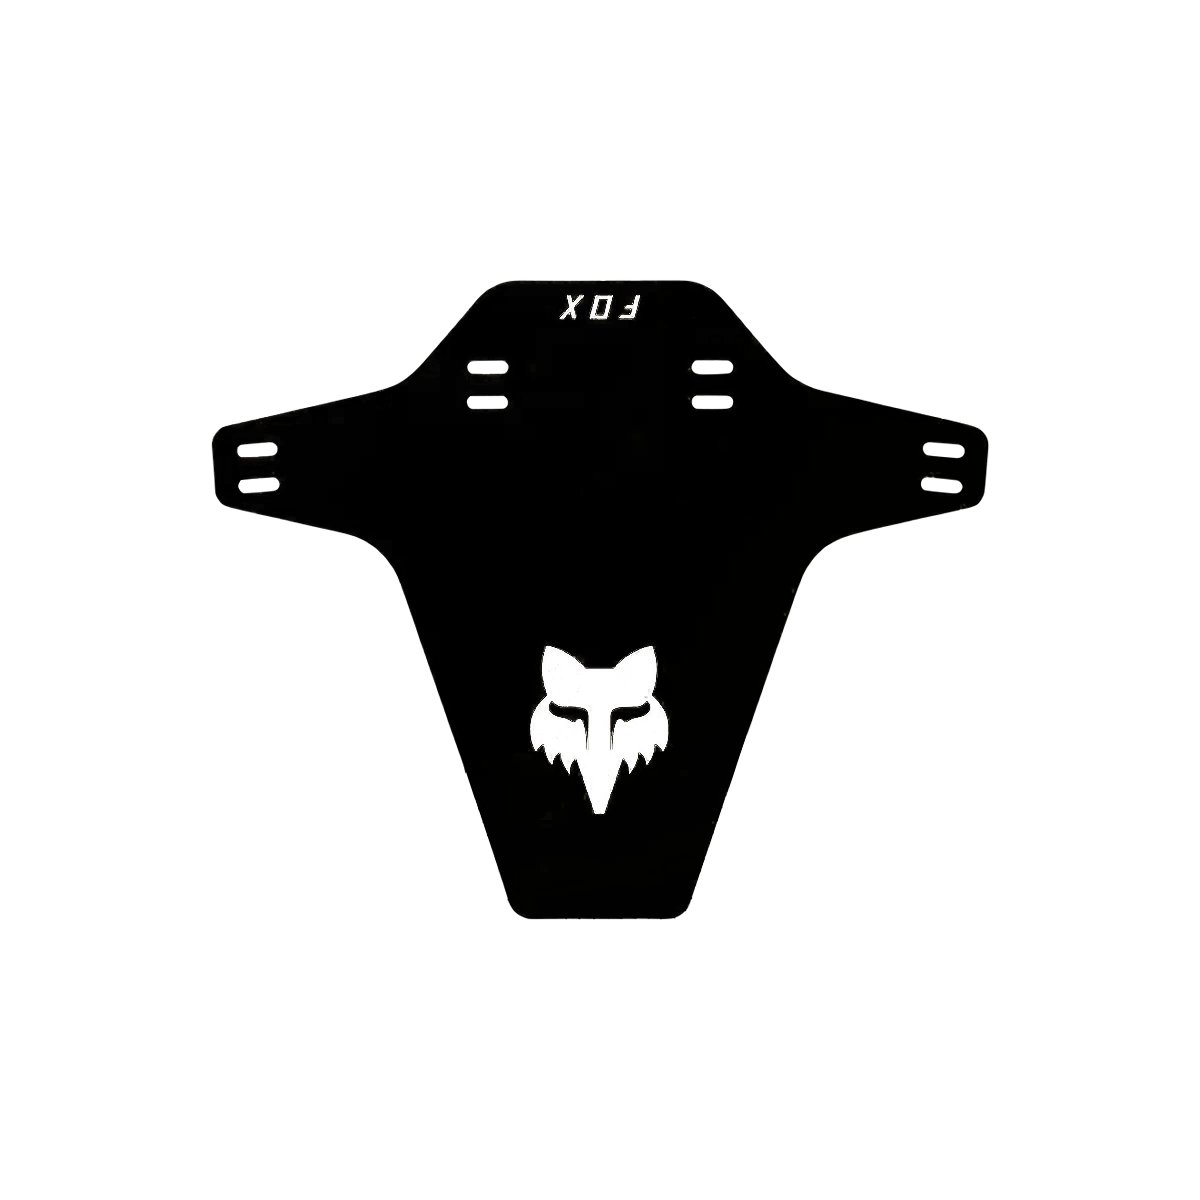 Guardabarros Fox color negro de horquilla con el logo nuevo de fox color blanco